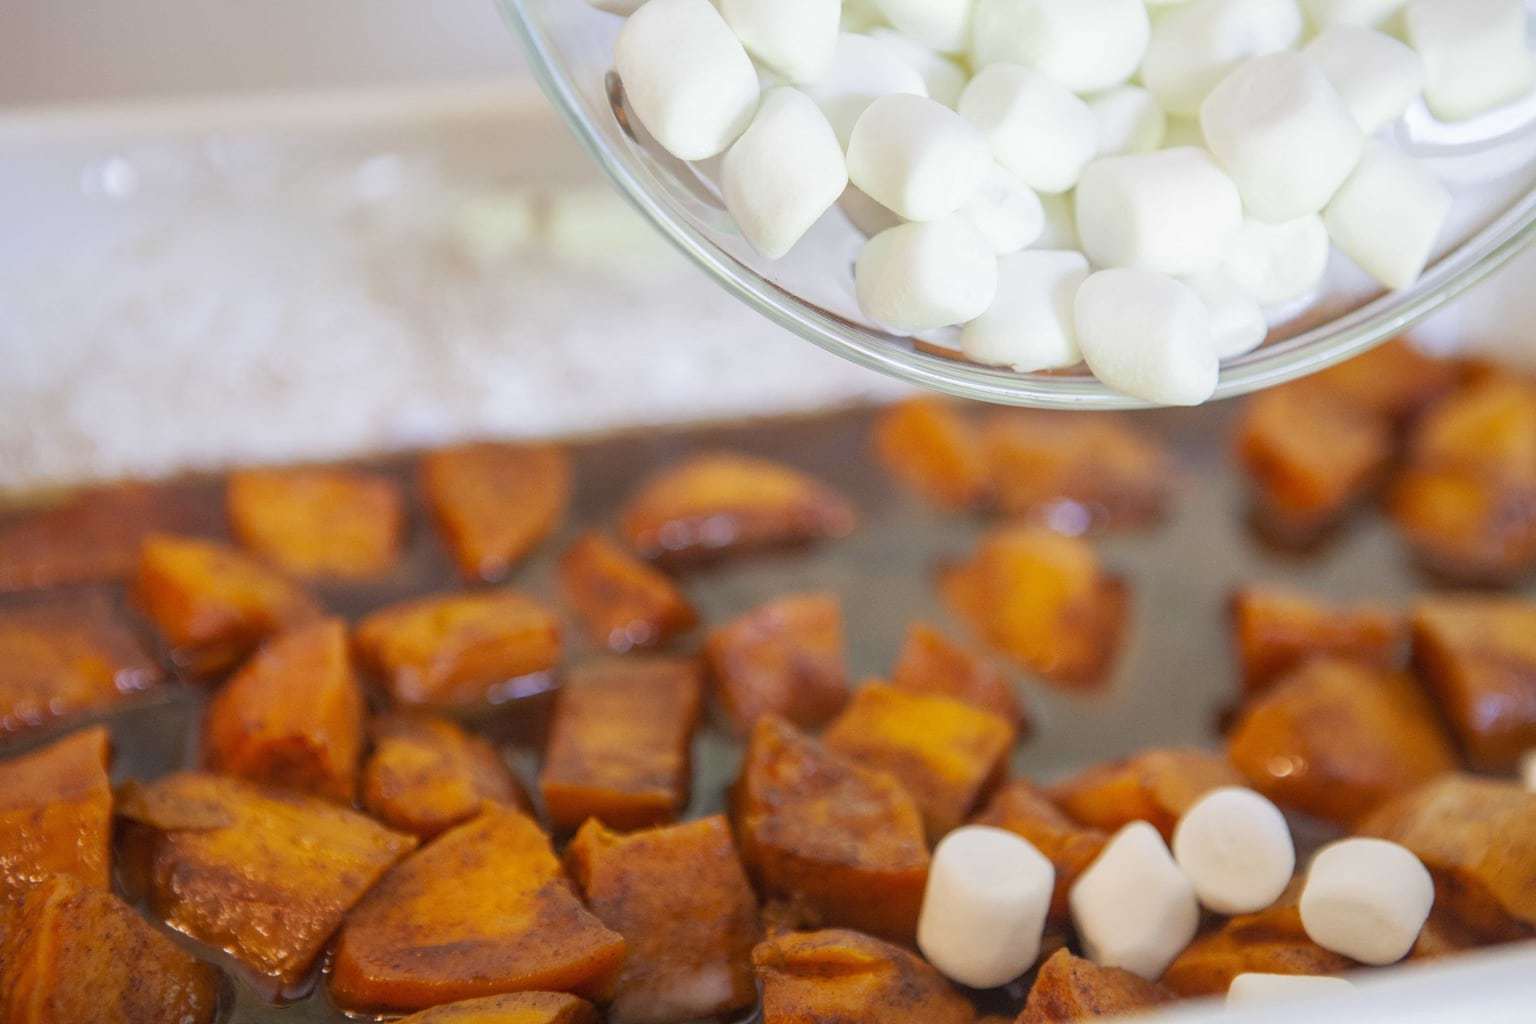 candied-yam-marshmallow-bake-2